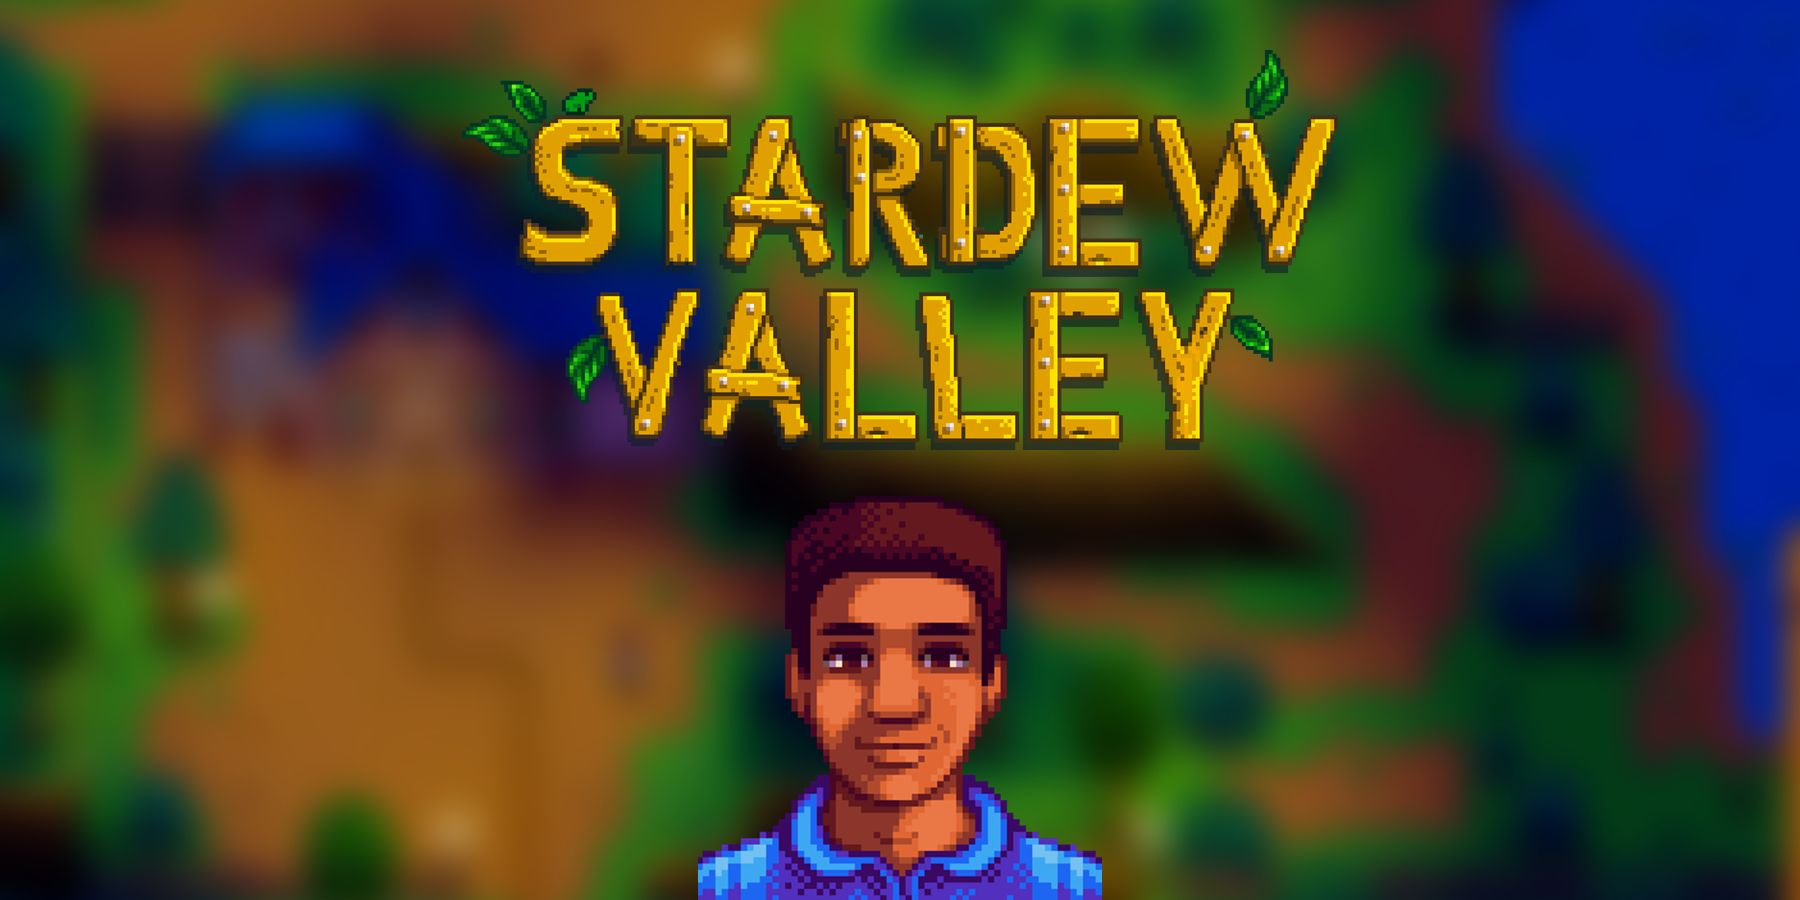 Stardew Valley Demetrius sprite and logo title